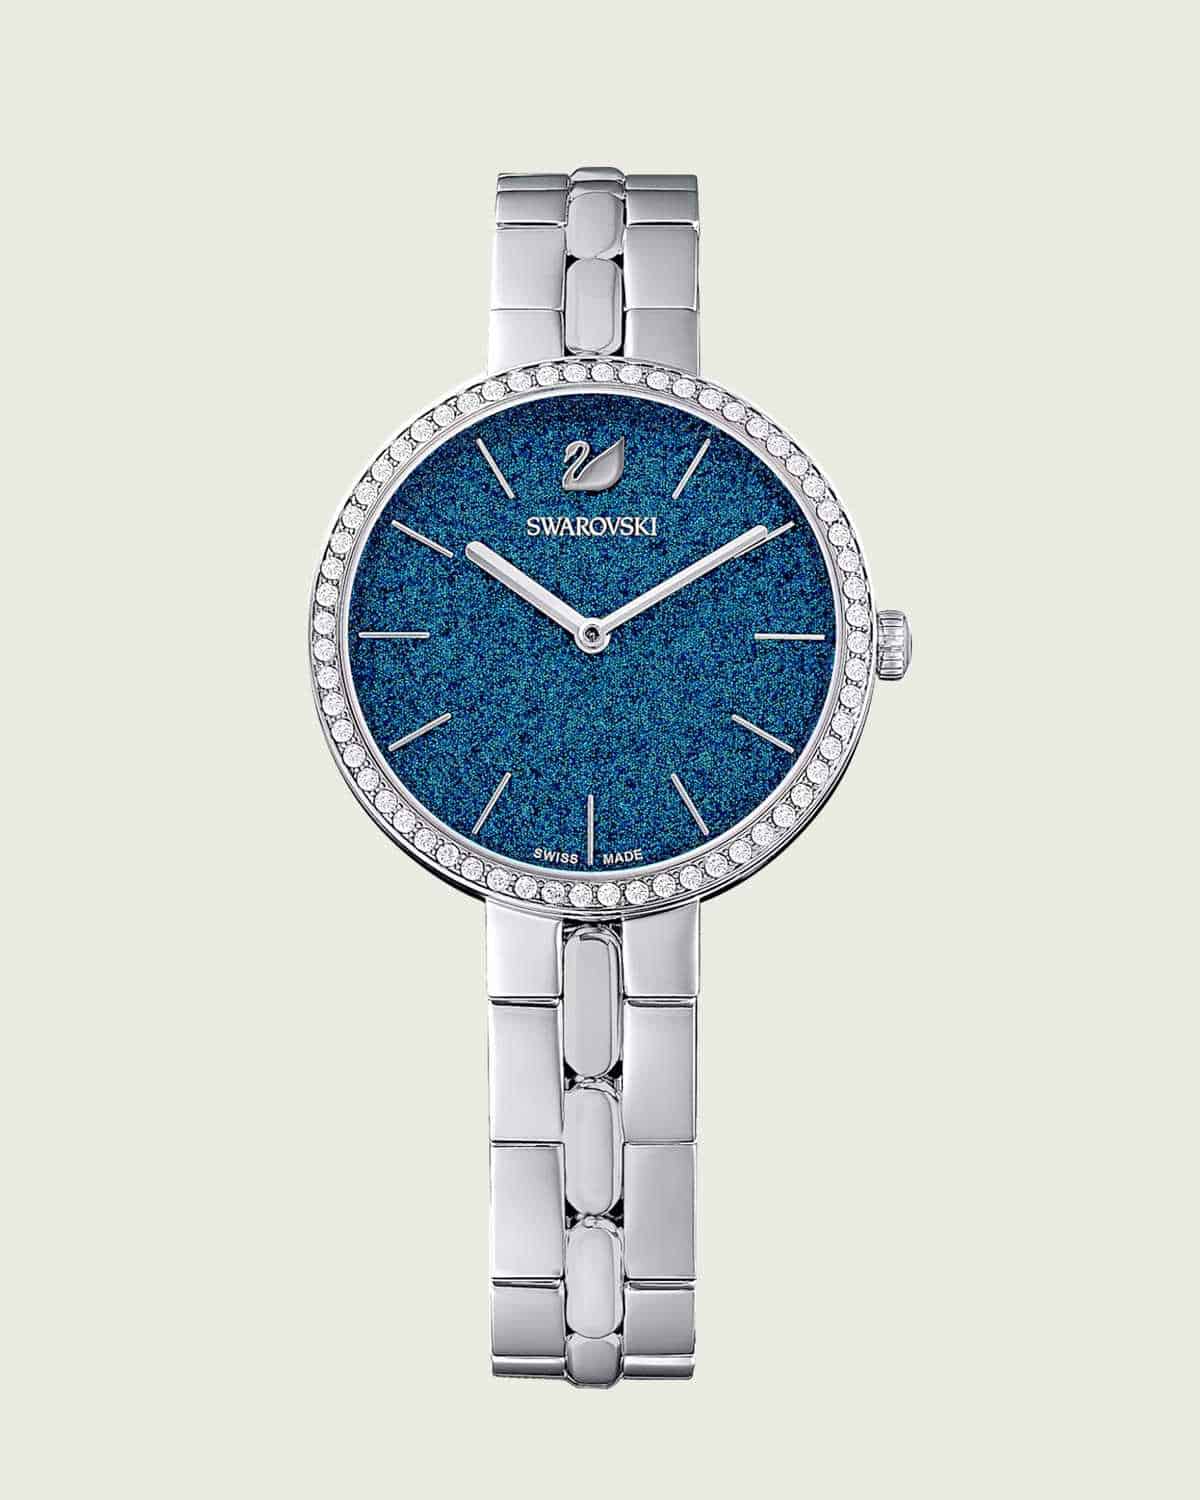 Đồng hồ Swarovski Cosmopolitan có thiết kế trang nhã.